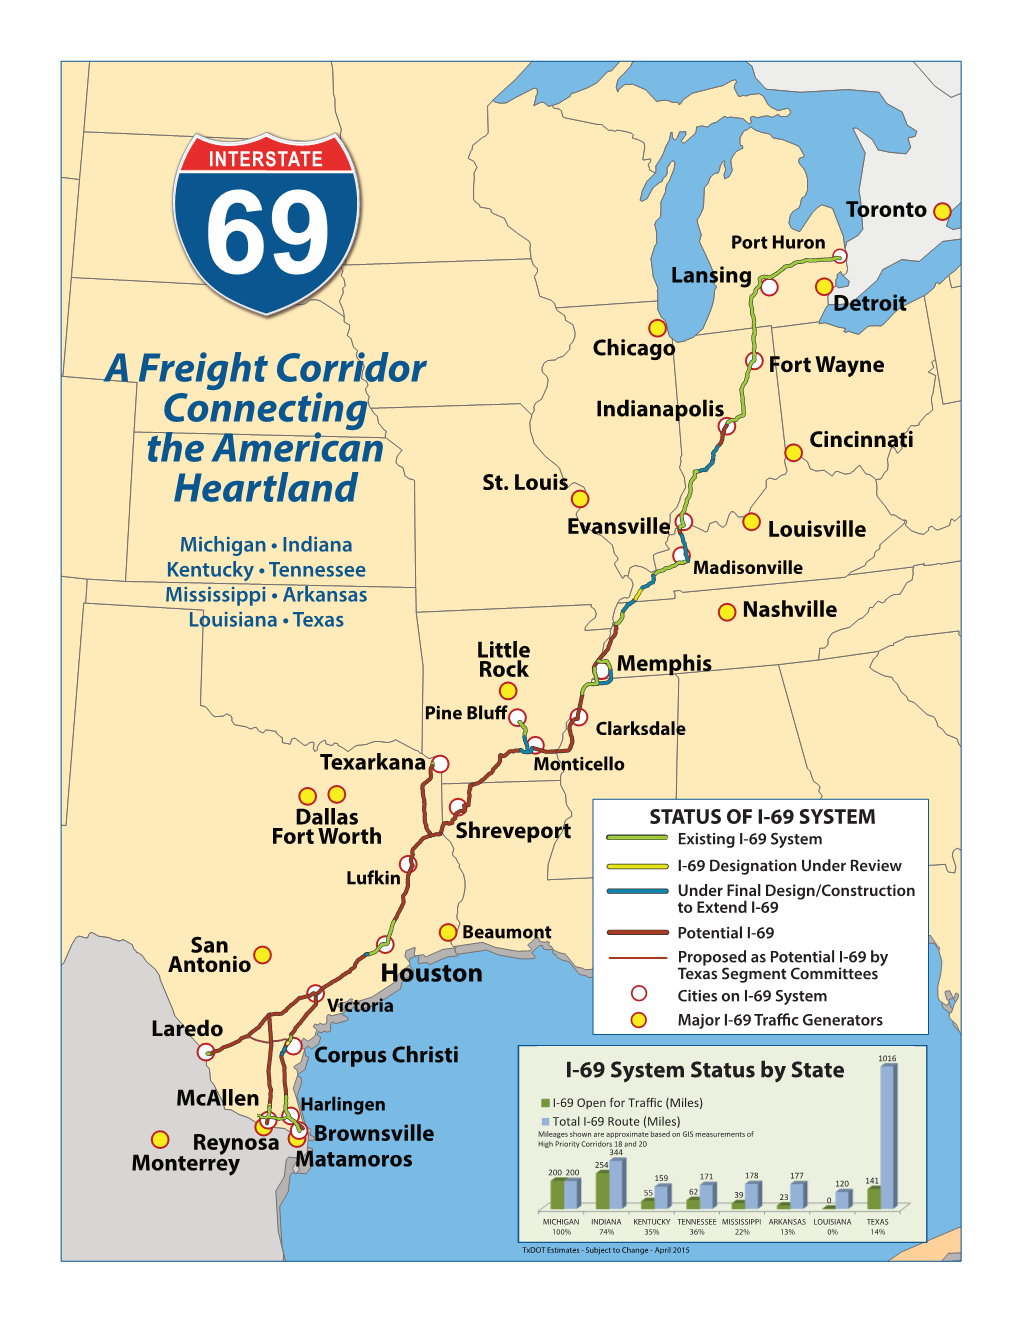 A Freight Corridor Connecting the American Heartland